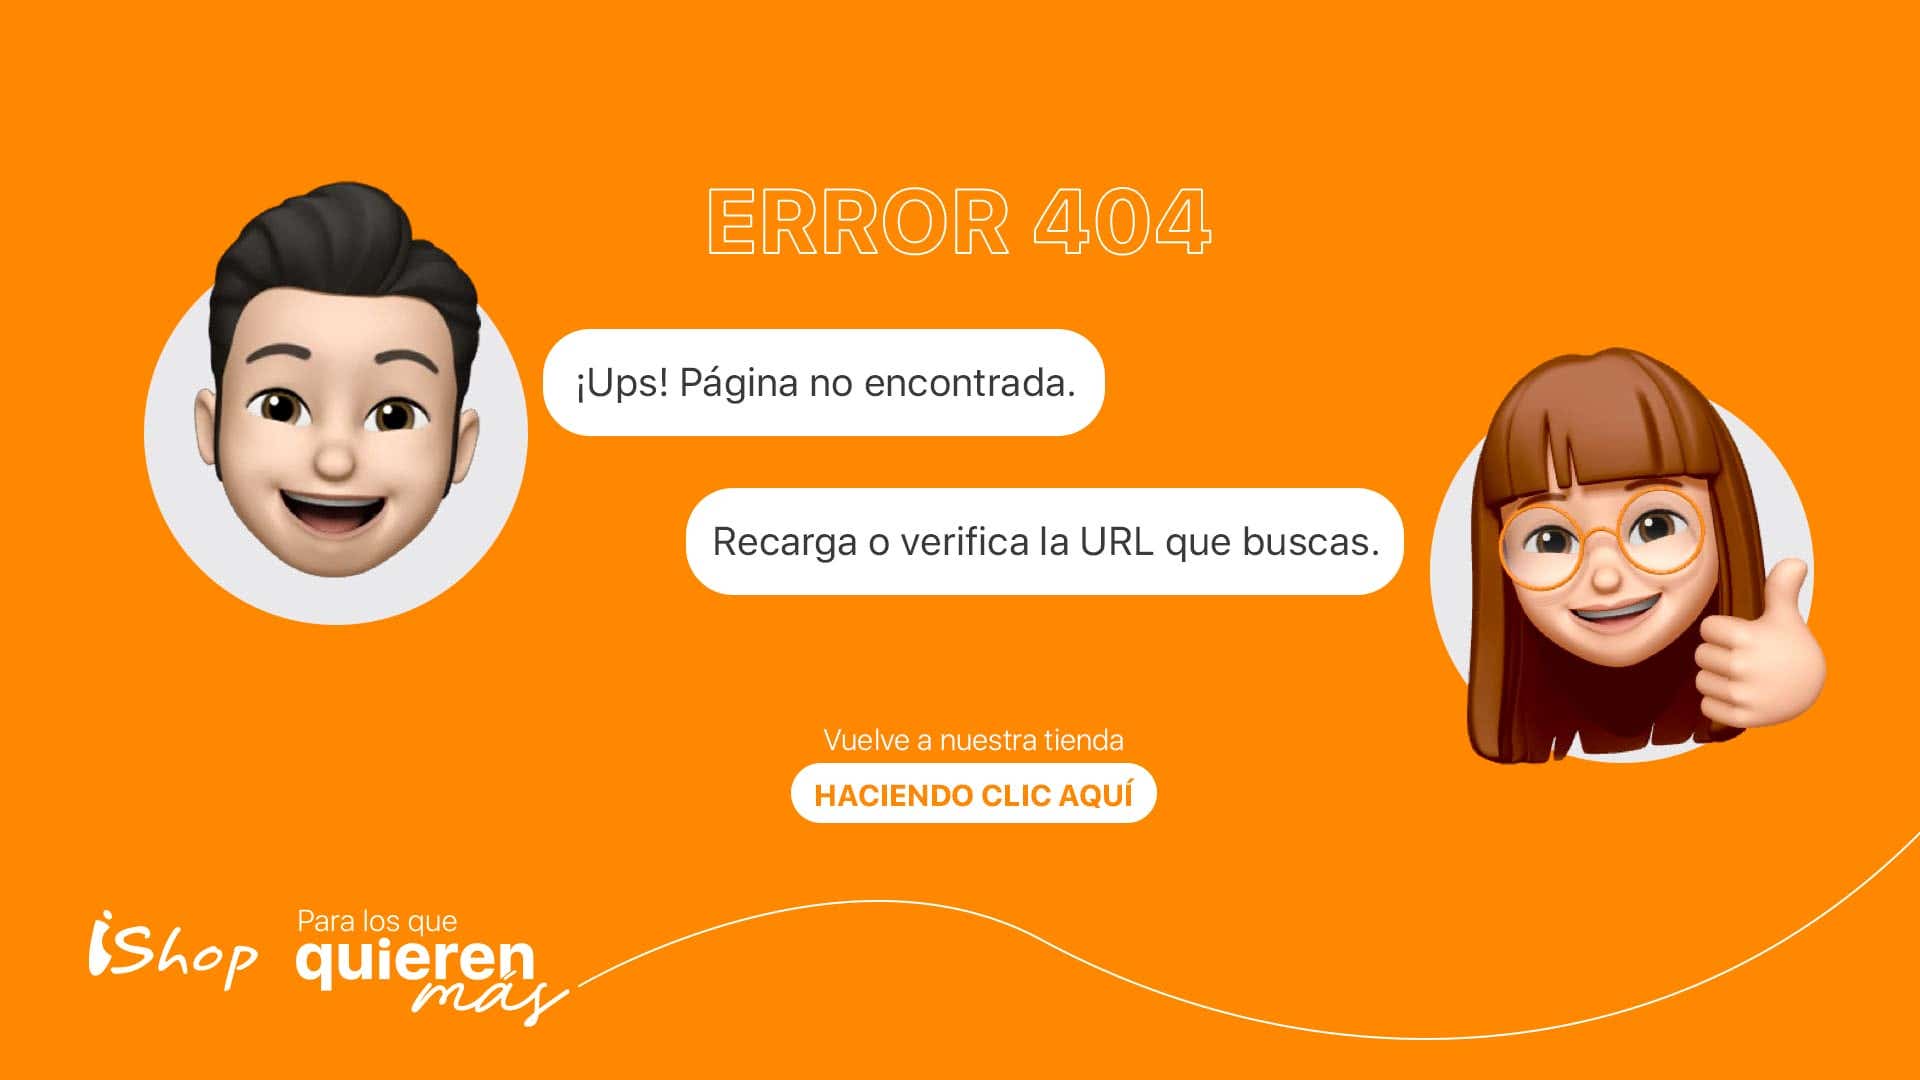 ¡Ups! Pagina no encontrada - Error 404 - Recarga o verifica la URL que buscas.